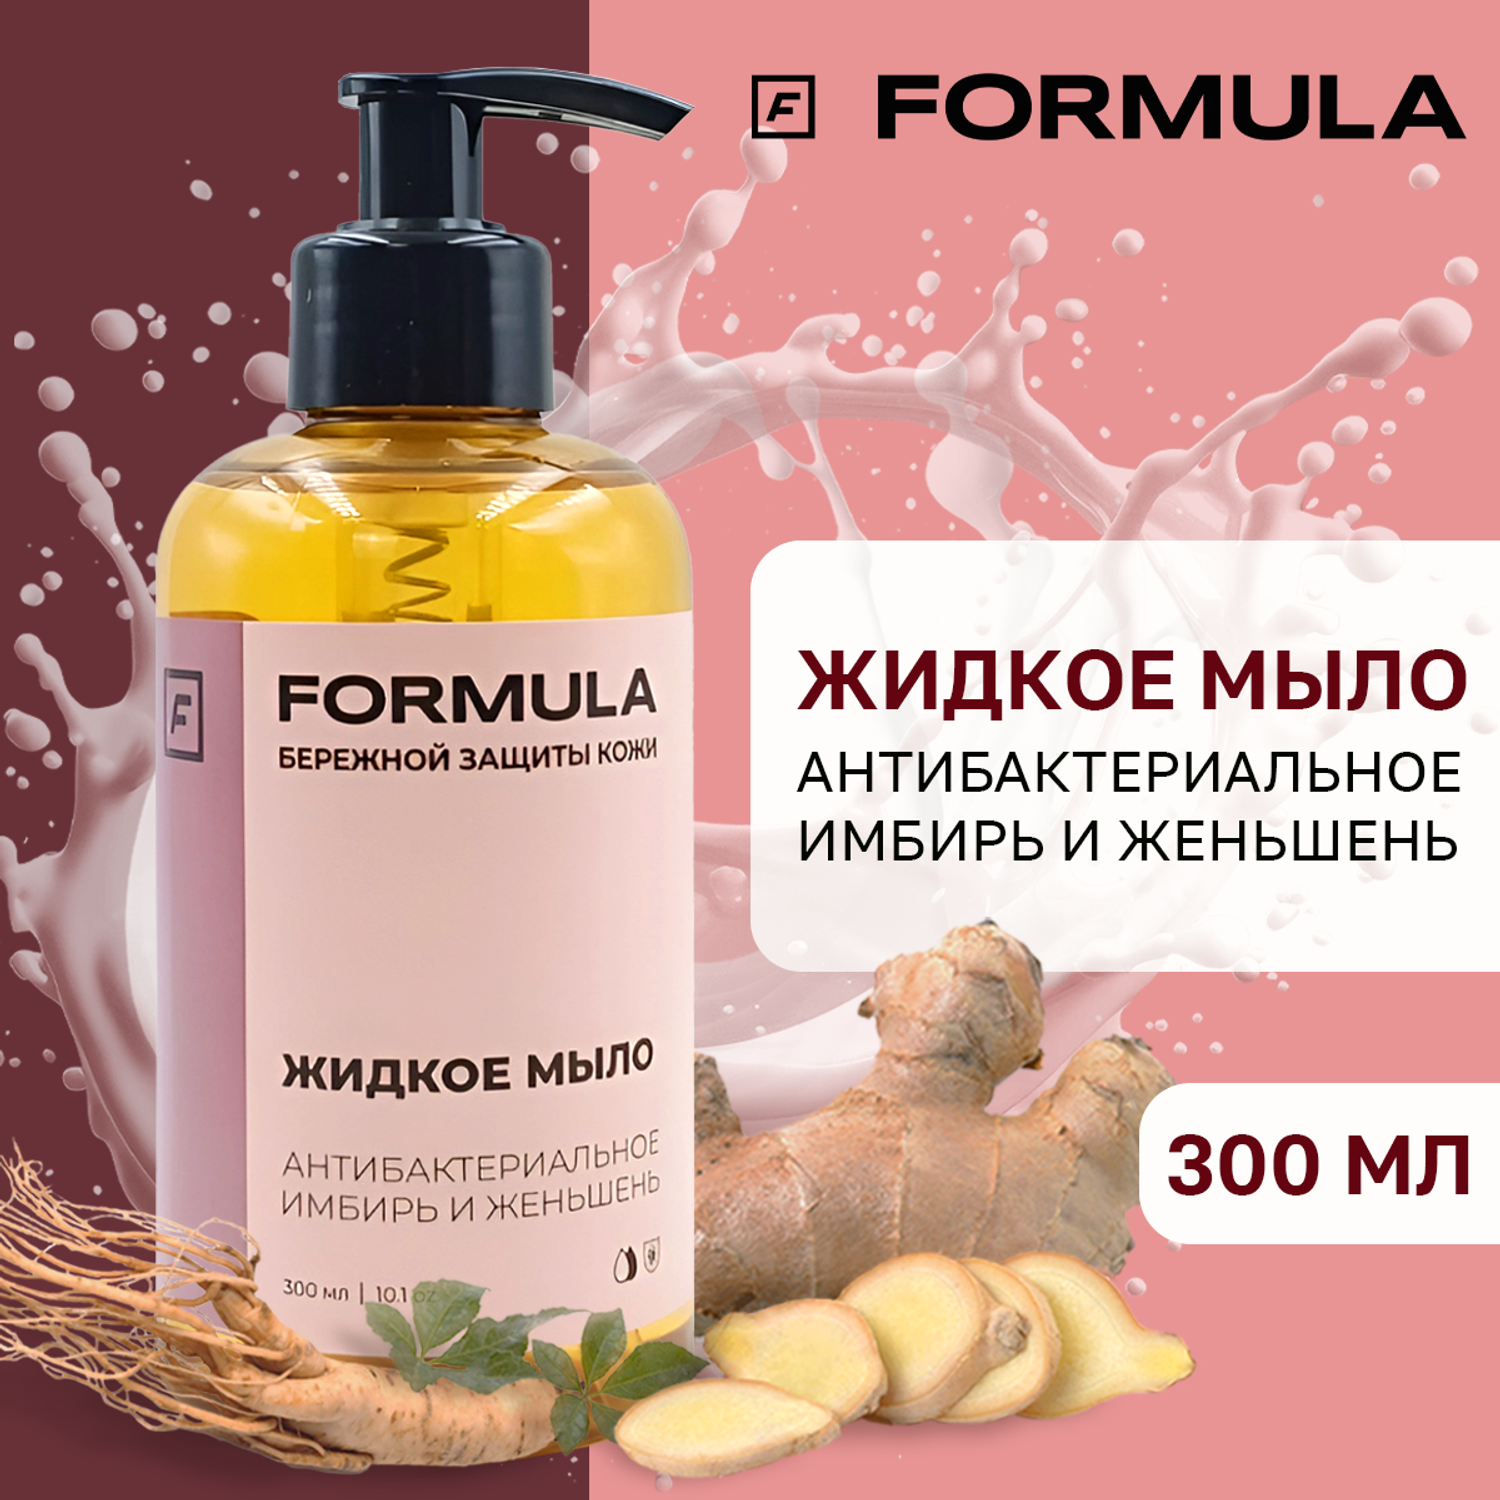 Жидкое мыло F Formula антибактериальное имбирь и женьшень 300мл - фото 1